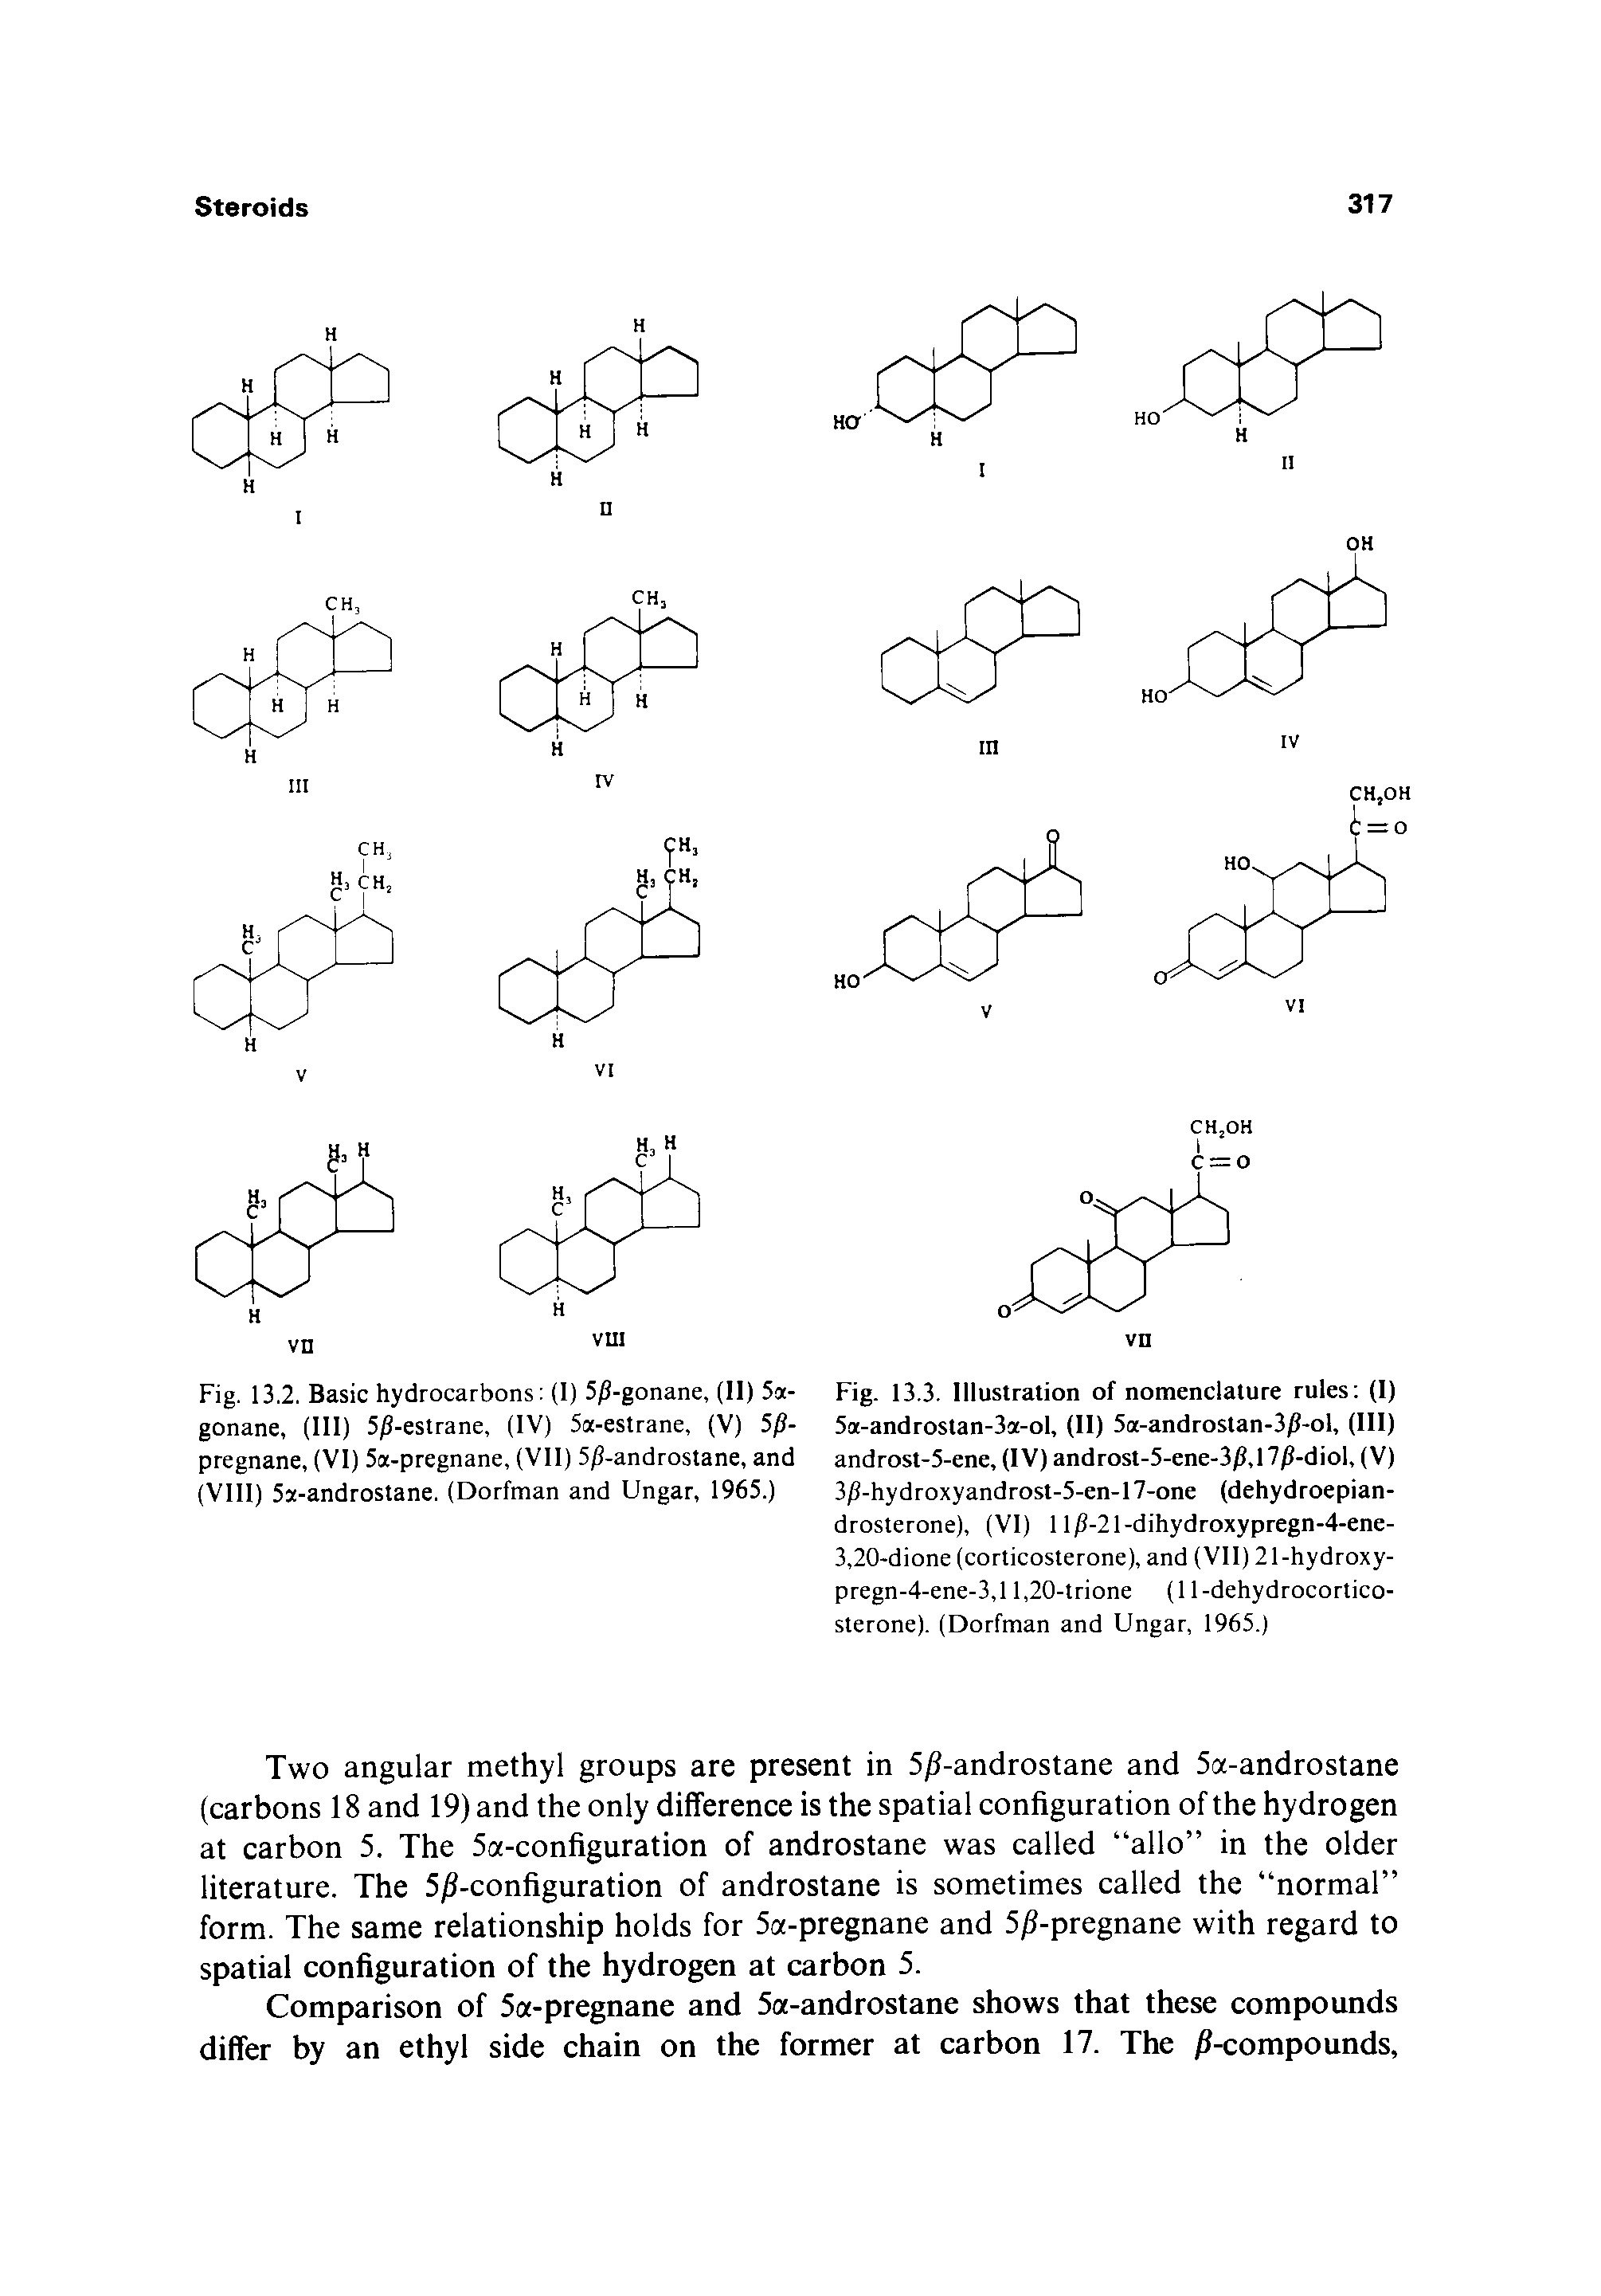 Fig. 13.2. Basic hydrocarbons (I) 5 -gonane, (II) 5a-gonane, (HI) 5 -estrane, (IV) 5a-estrane, (V) 5p-pregnane, (VI) 5a-pregnane, (VII) 5 -androstane, and (VIII) 5a-androstane. (Dorfman and Ungar, 1965.)...